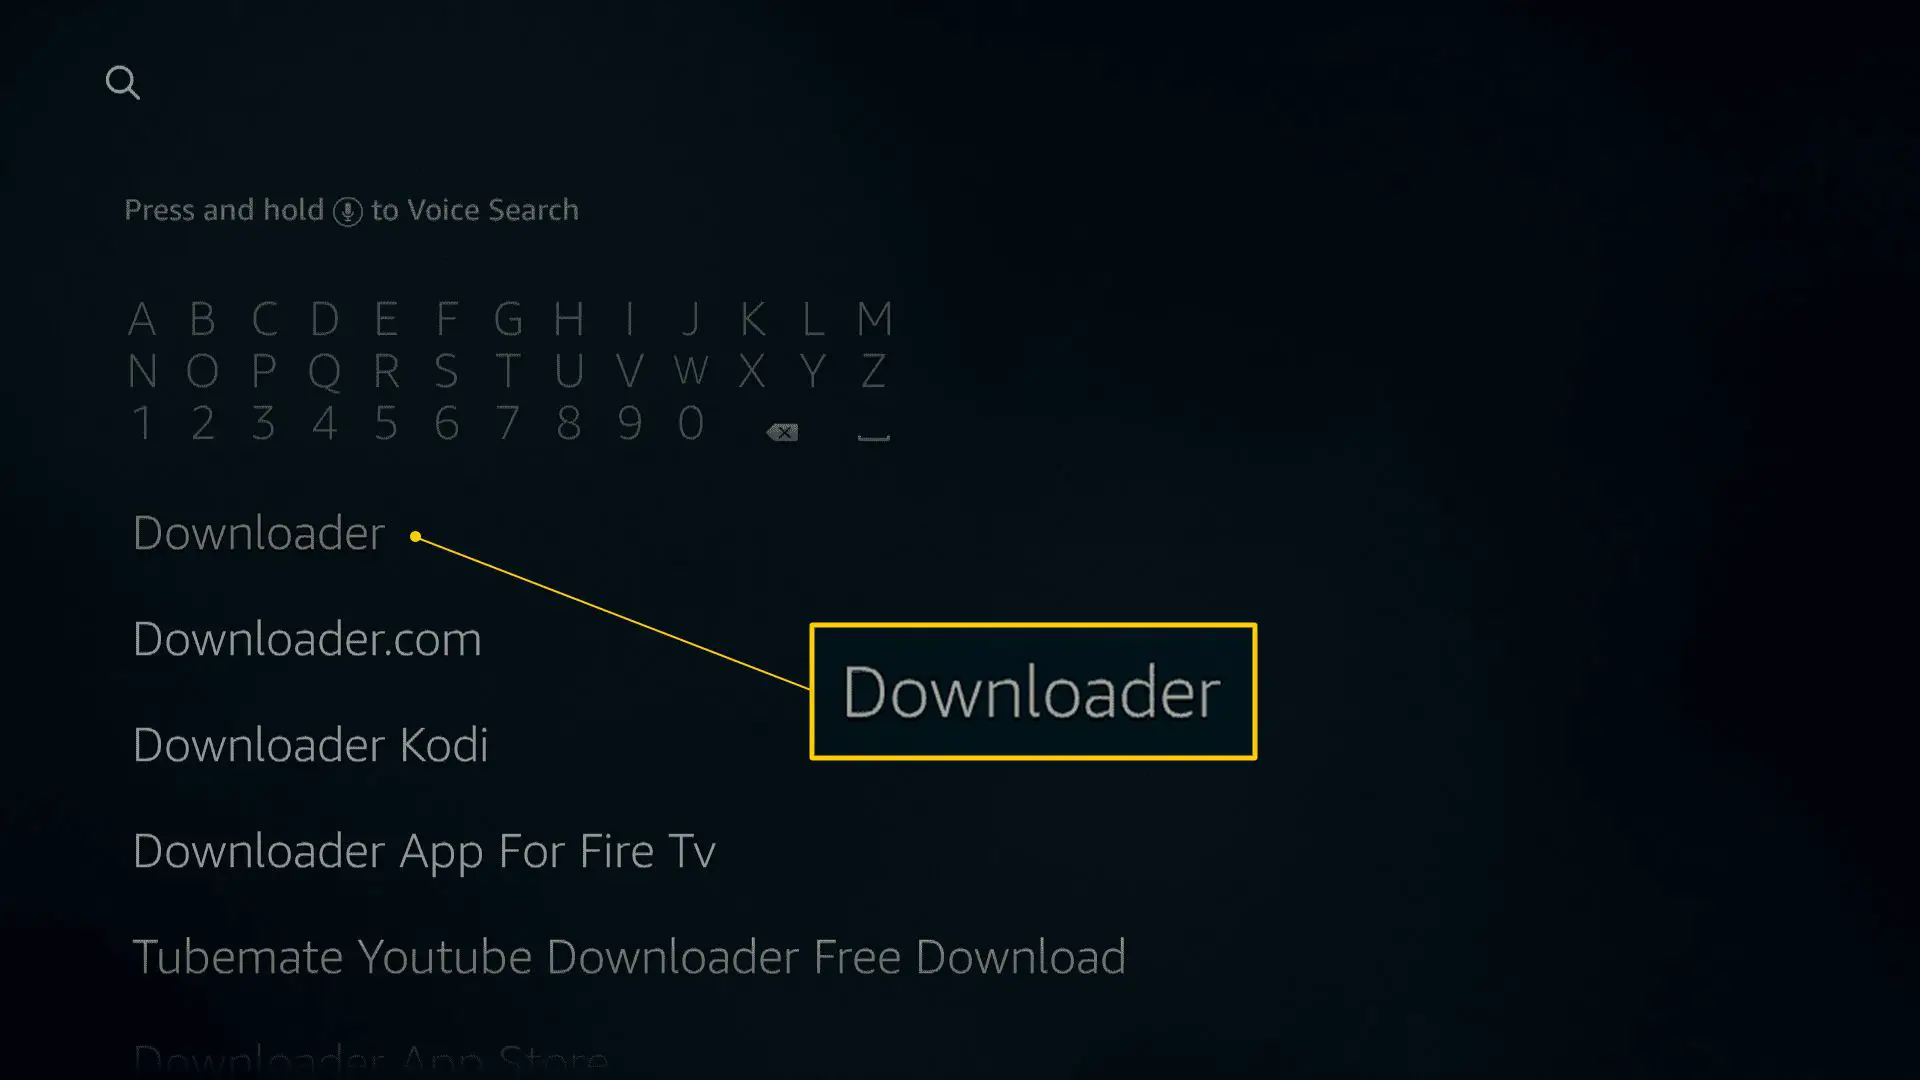 Busca do downloader na página de busca do Fire TV